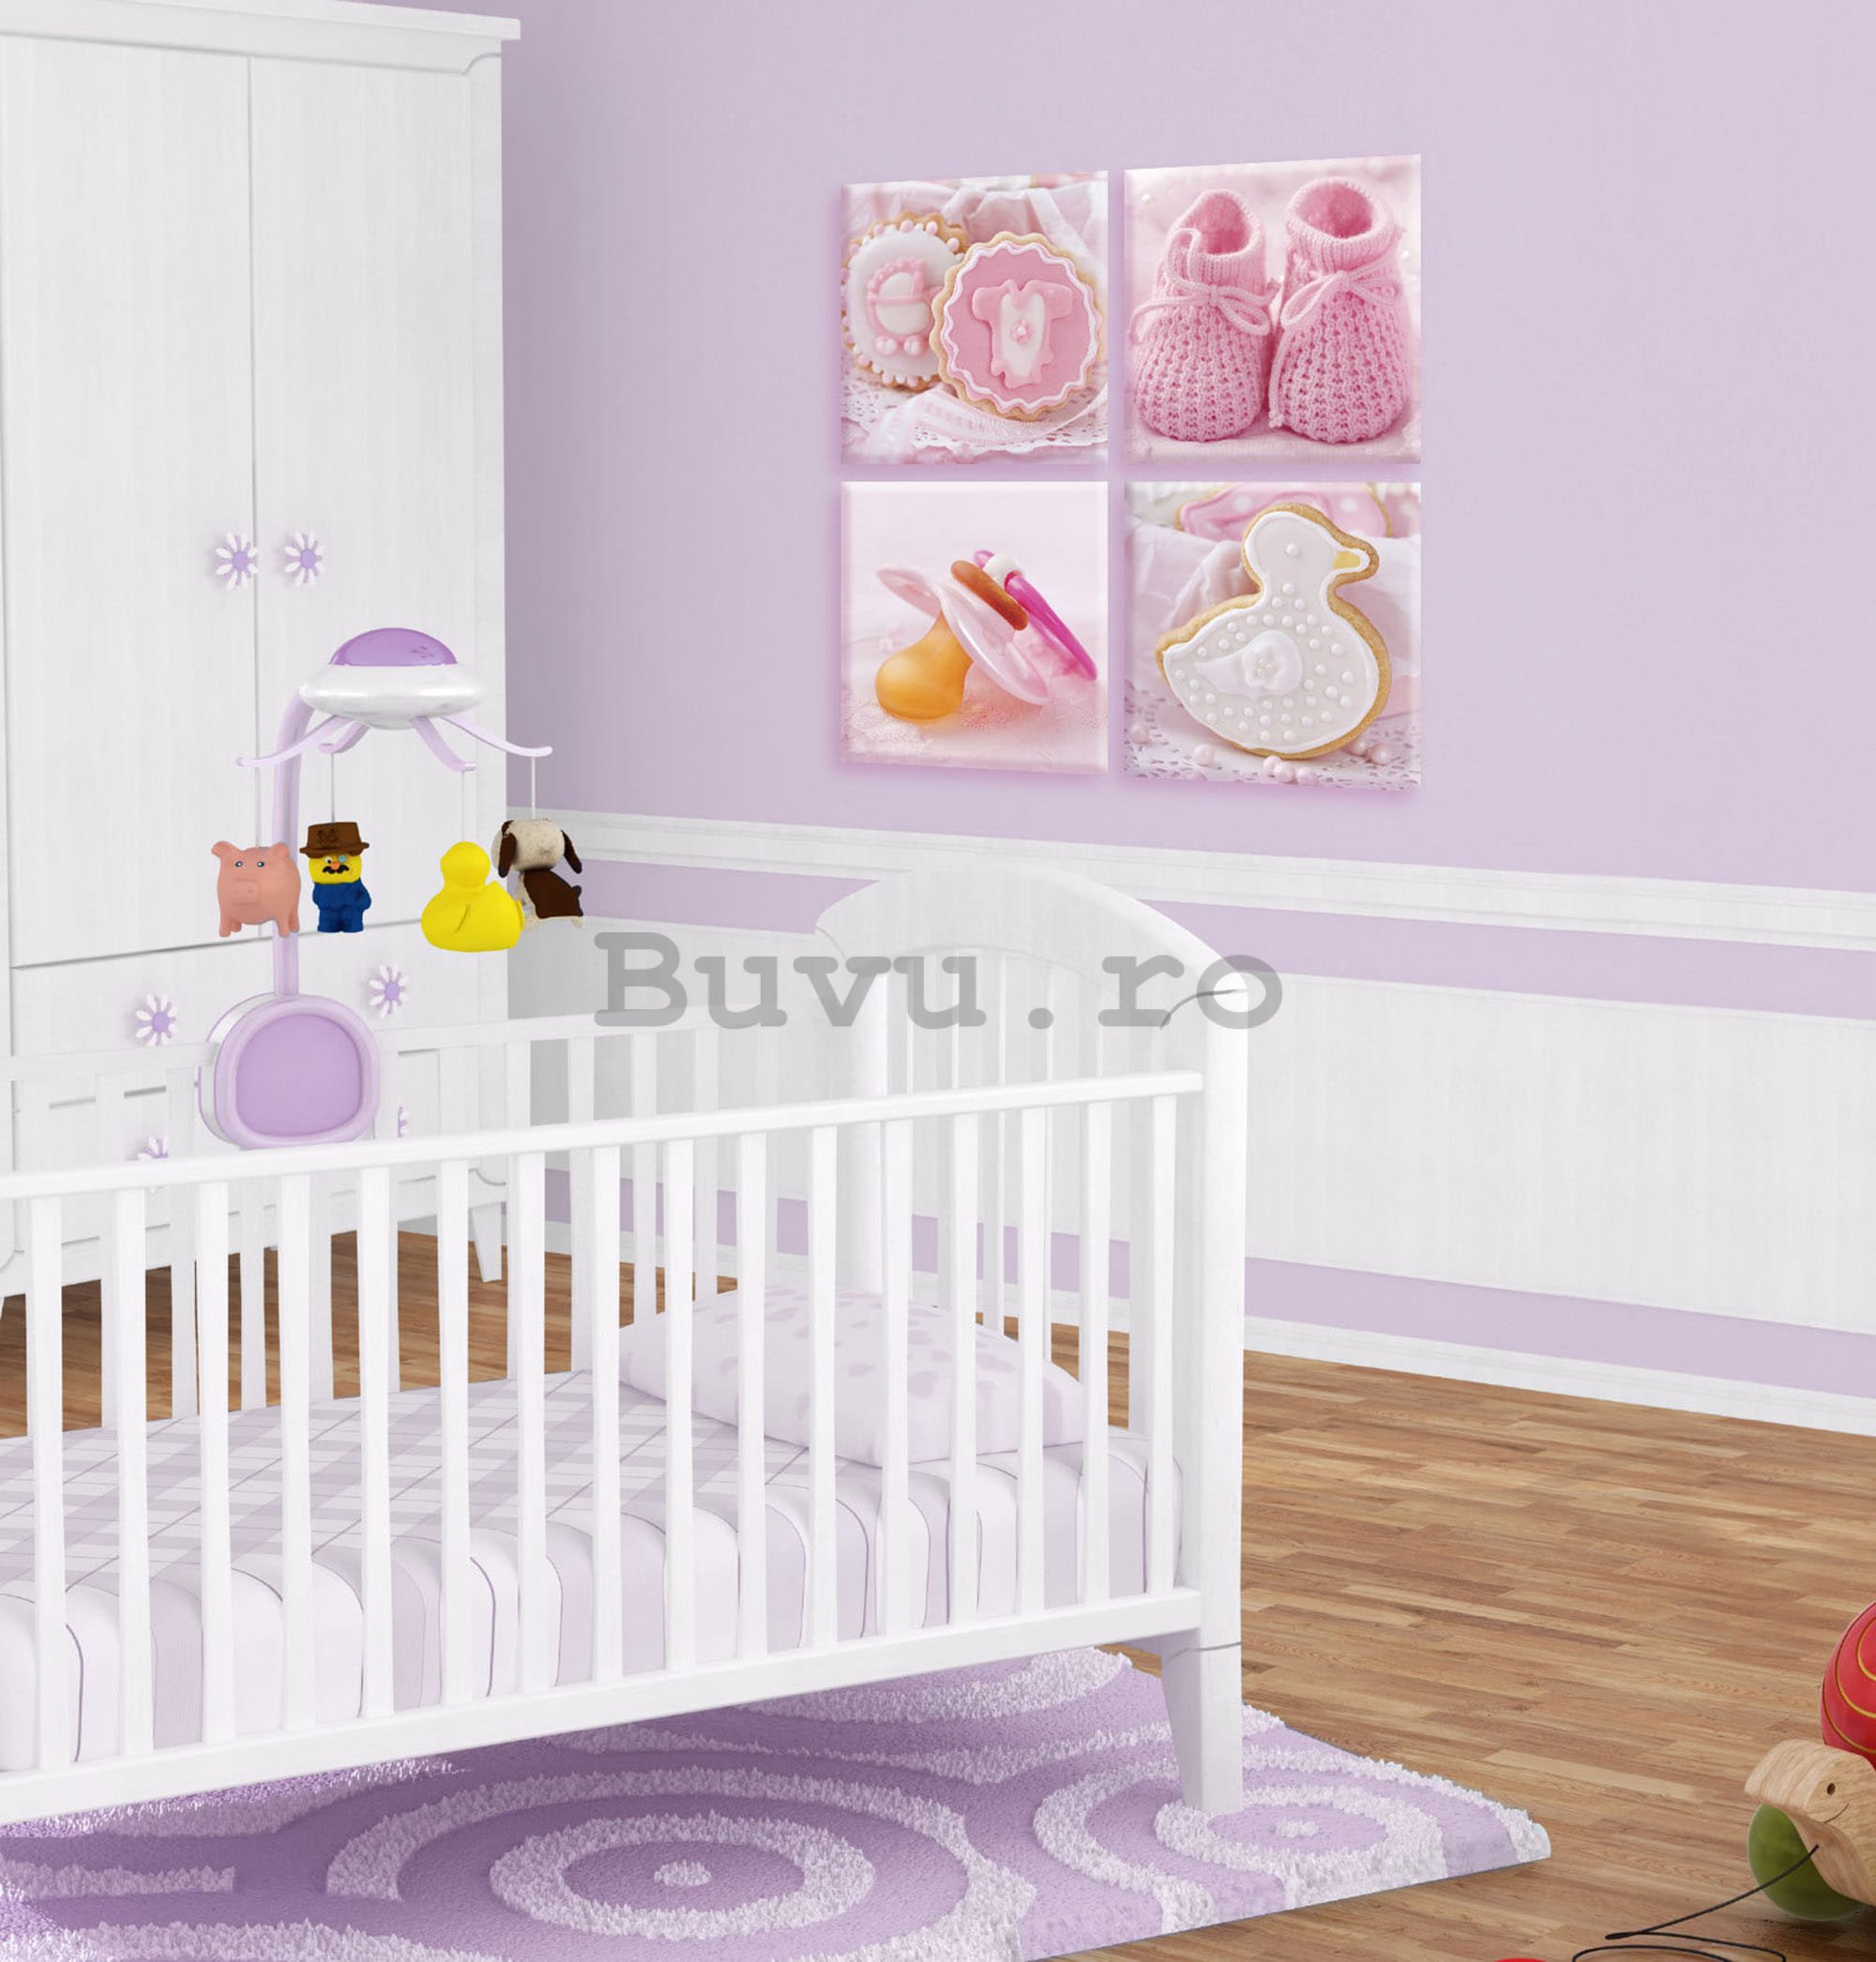 Tablou canvas: Motive roz pentru bebeluși - set 4 buc 25x25cm